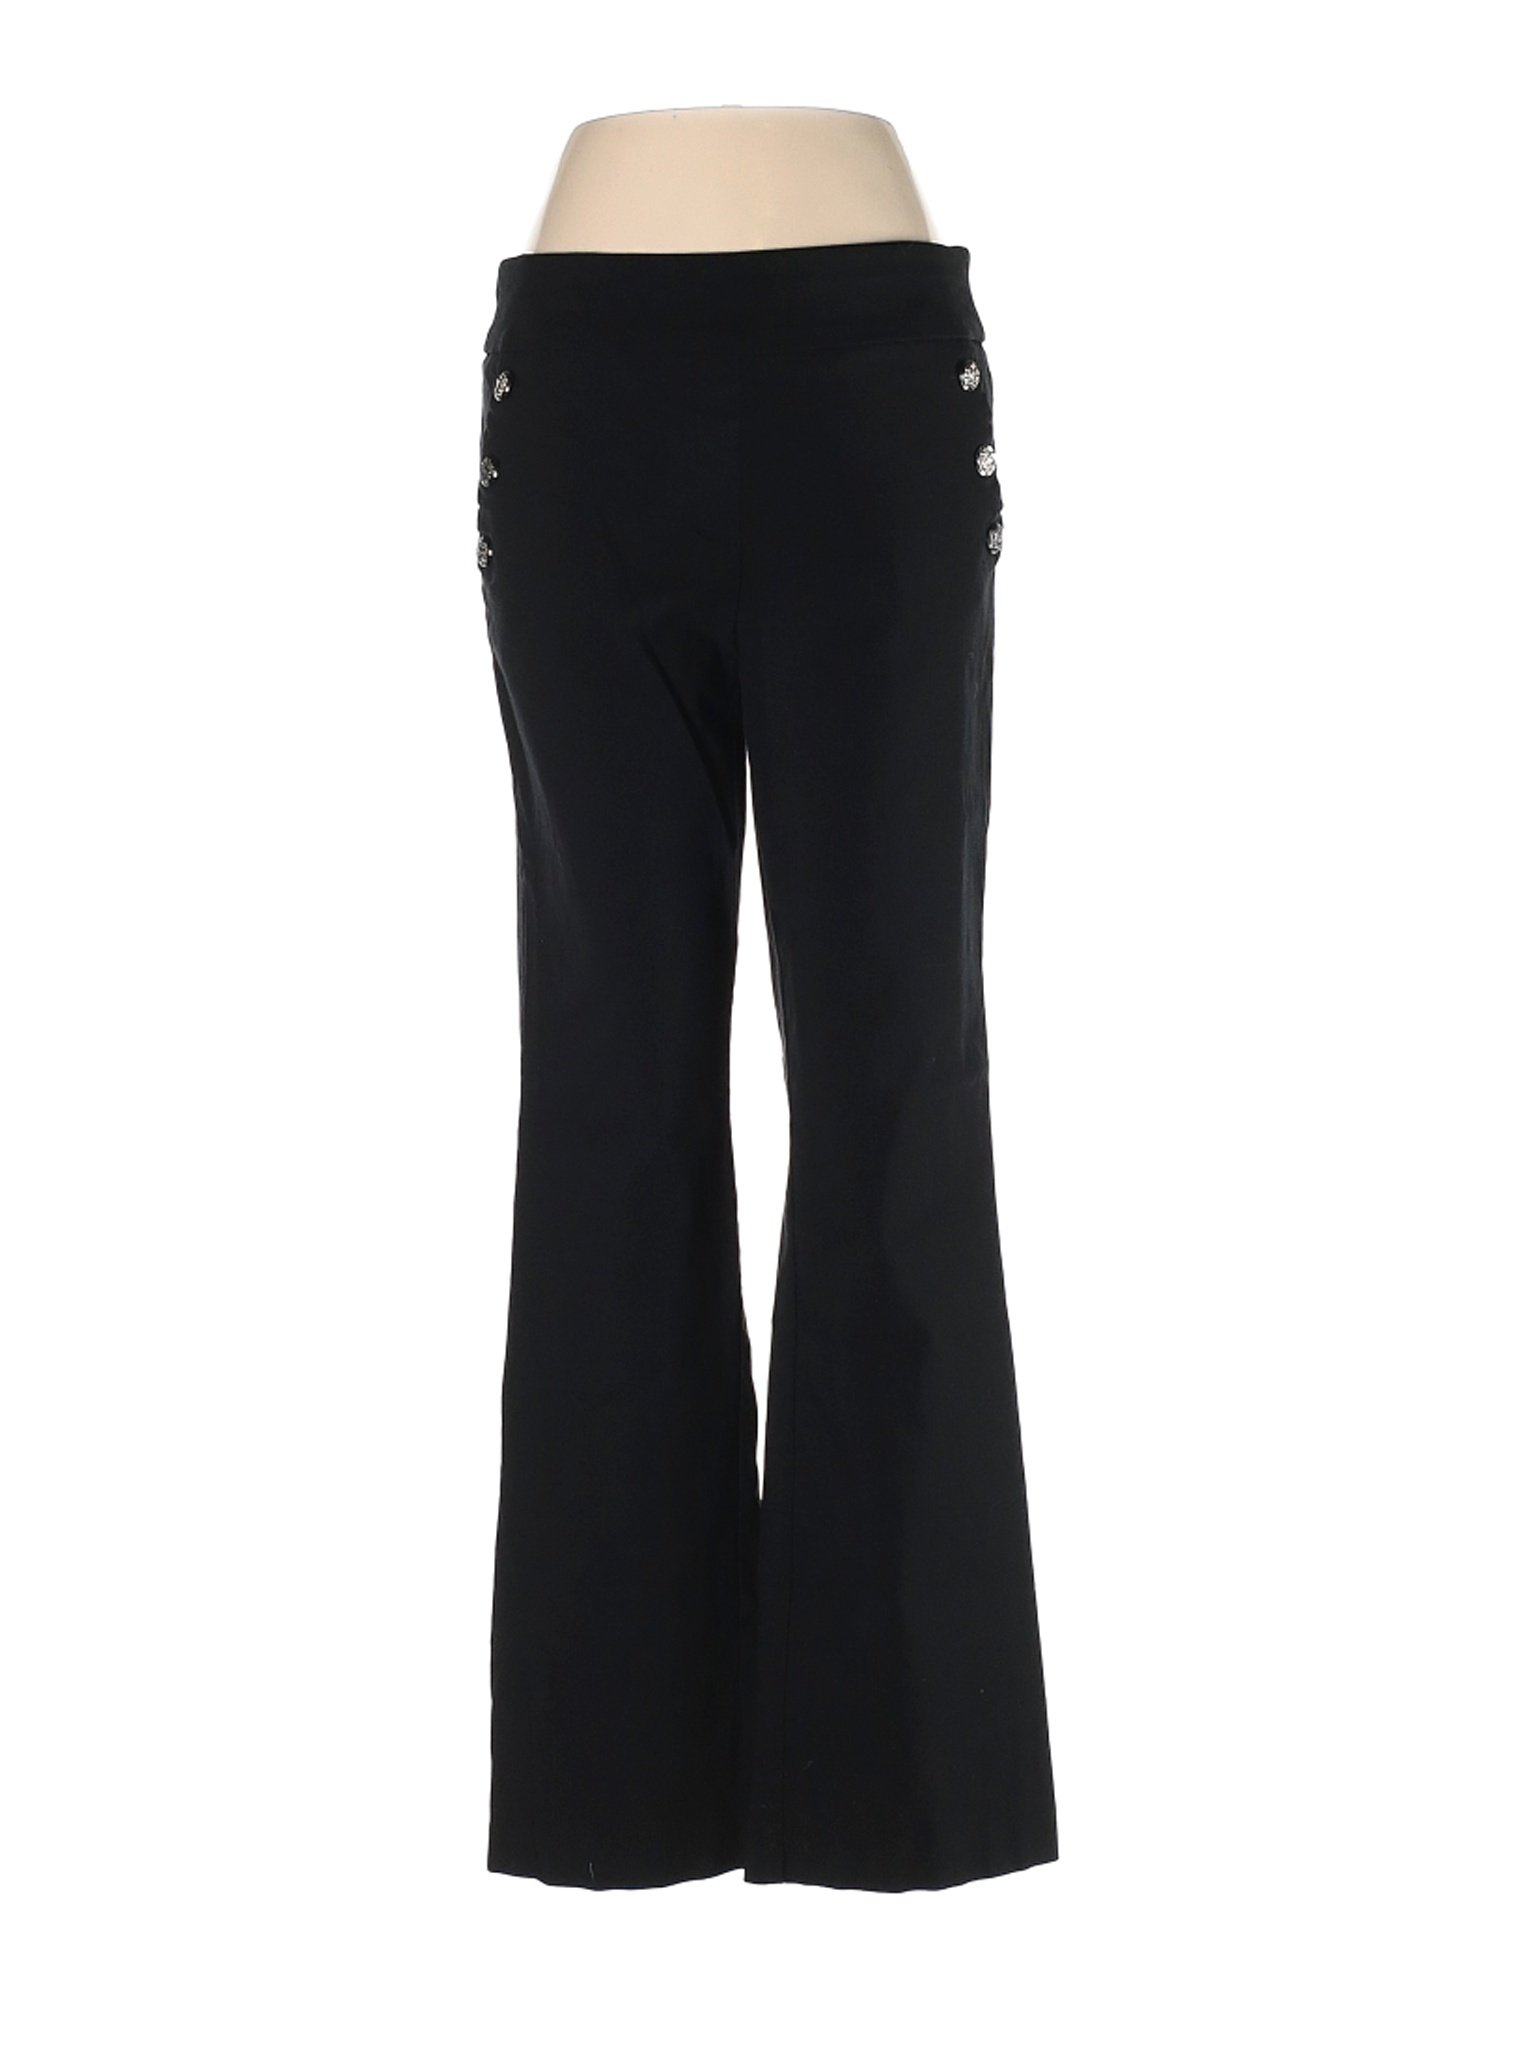 Roz & Ali Women Black Dress Pants 8 | eBay